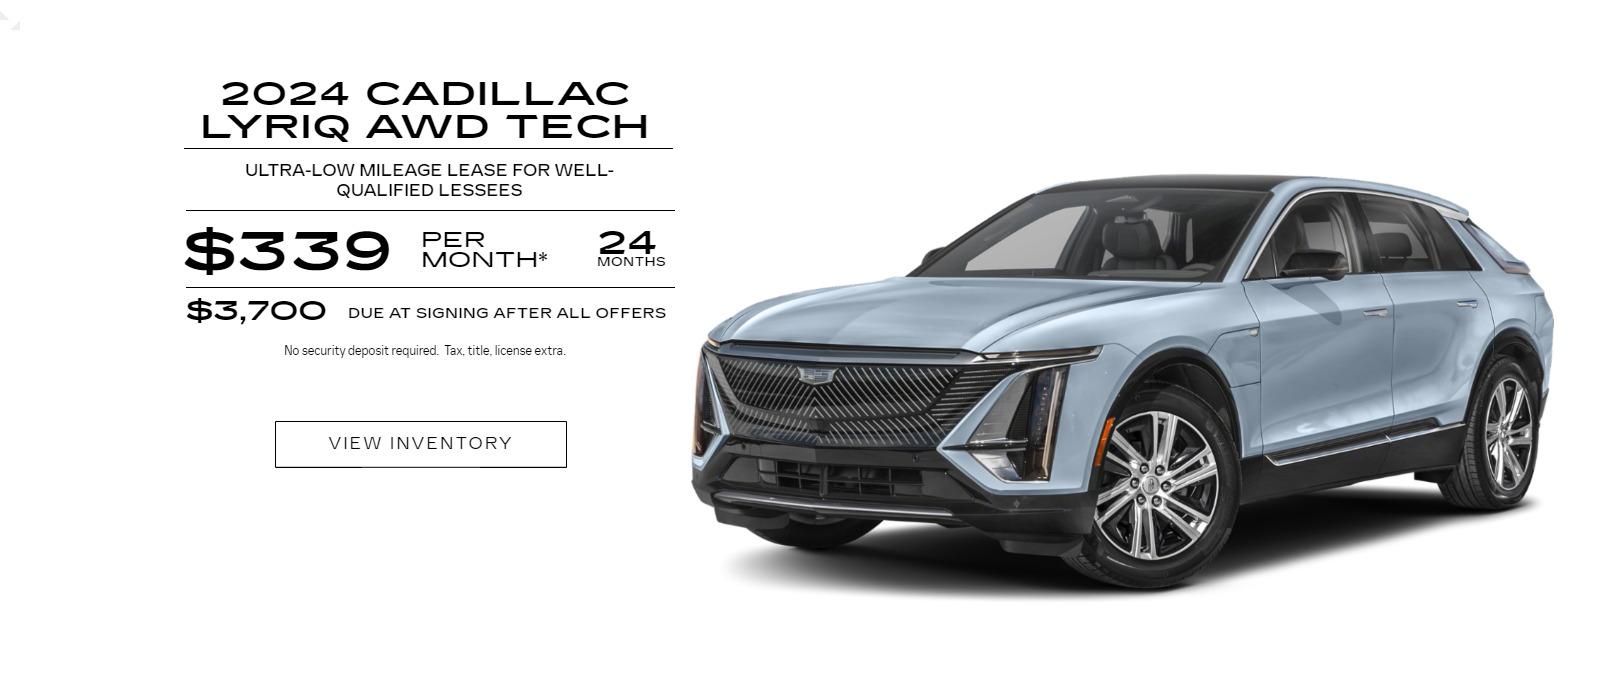 2024 Cadillac LYRIQ AWD Tech Lease Offer